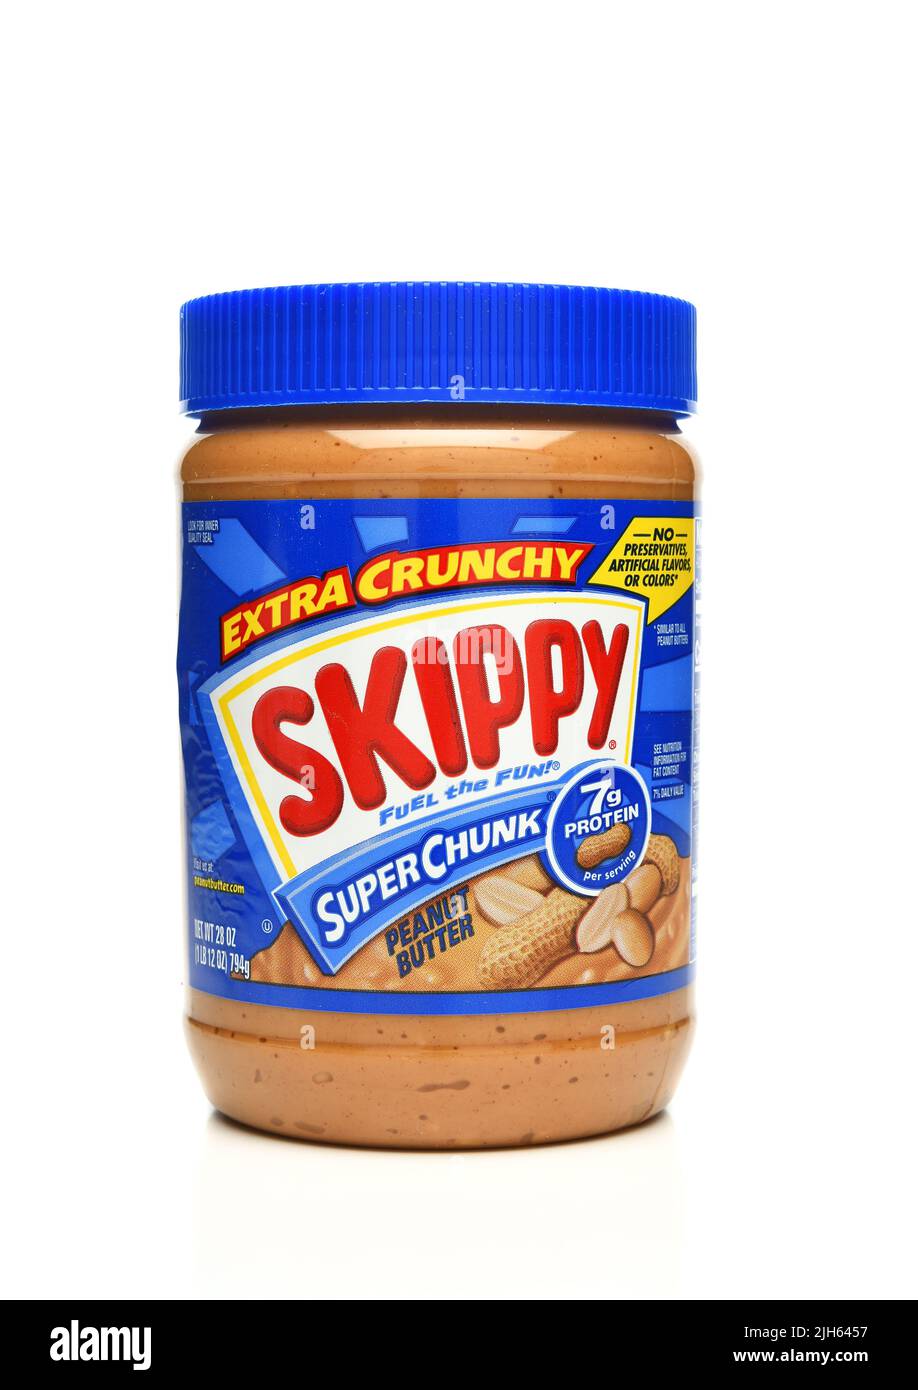 IRVINE, KALIFORNIEN - 15 JUL 2022: Ein Glas Skippy Extra Crunch Super Chunk Peanut Butter. Stockfoto